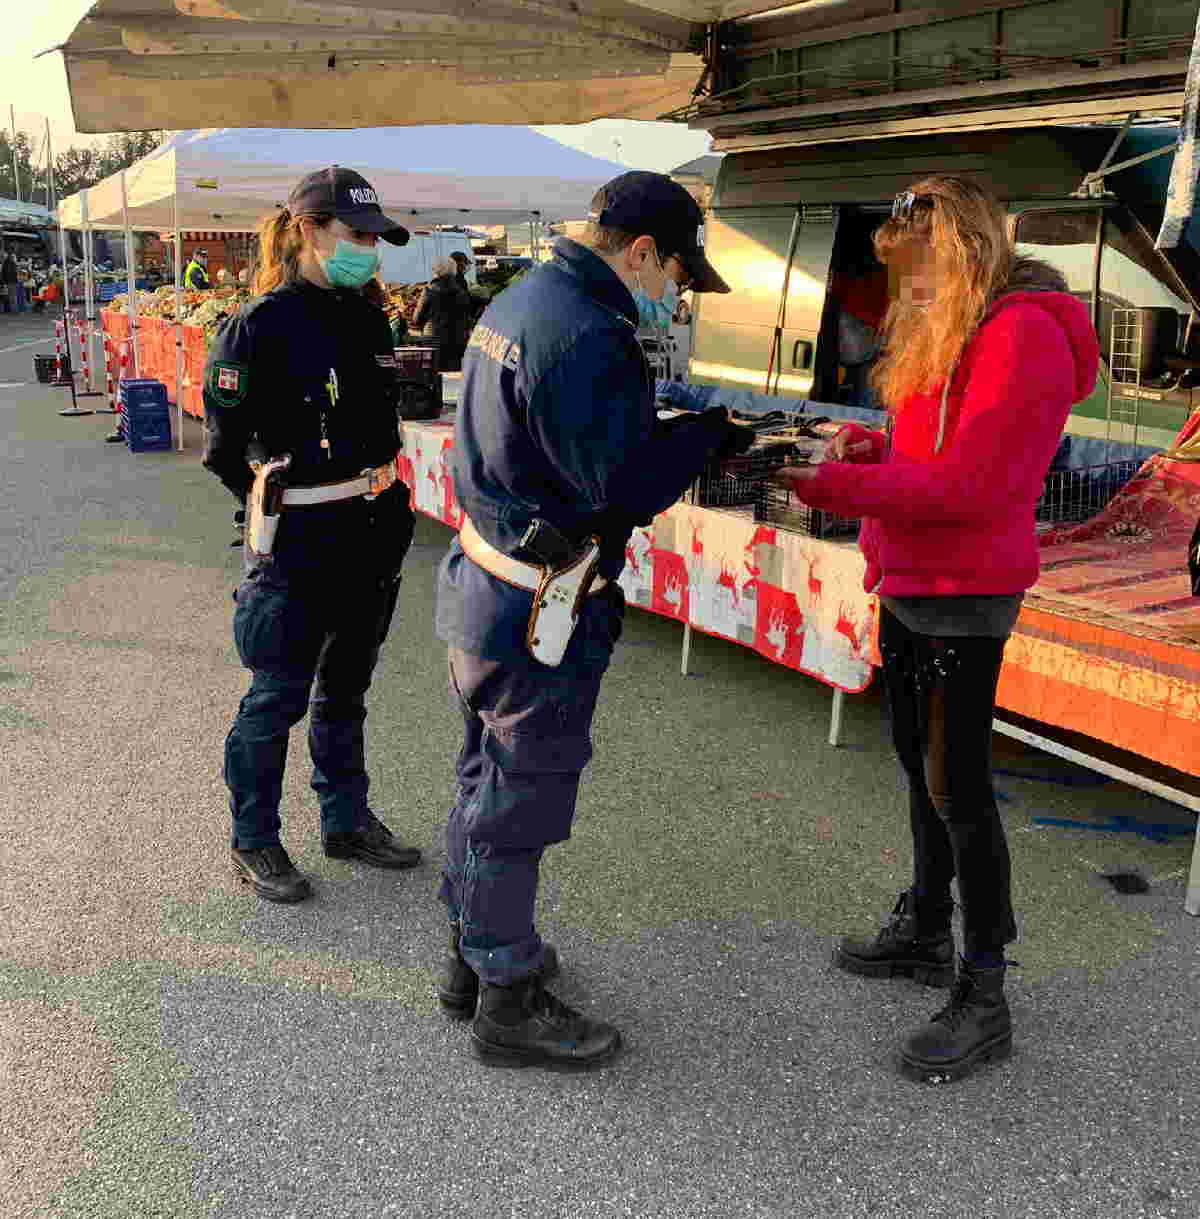 BORGARO TORINESE – Controlli a tappeto al mercato da parte della Polizia Locale